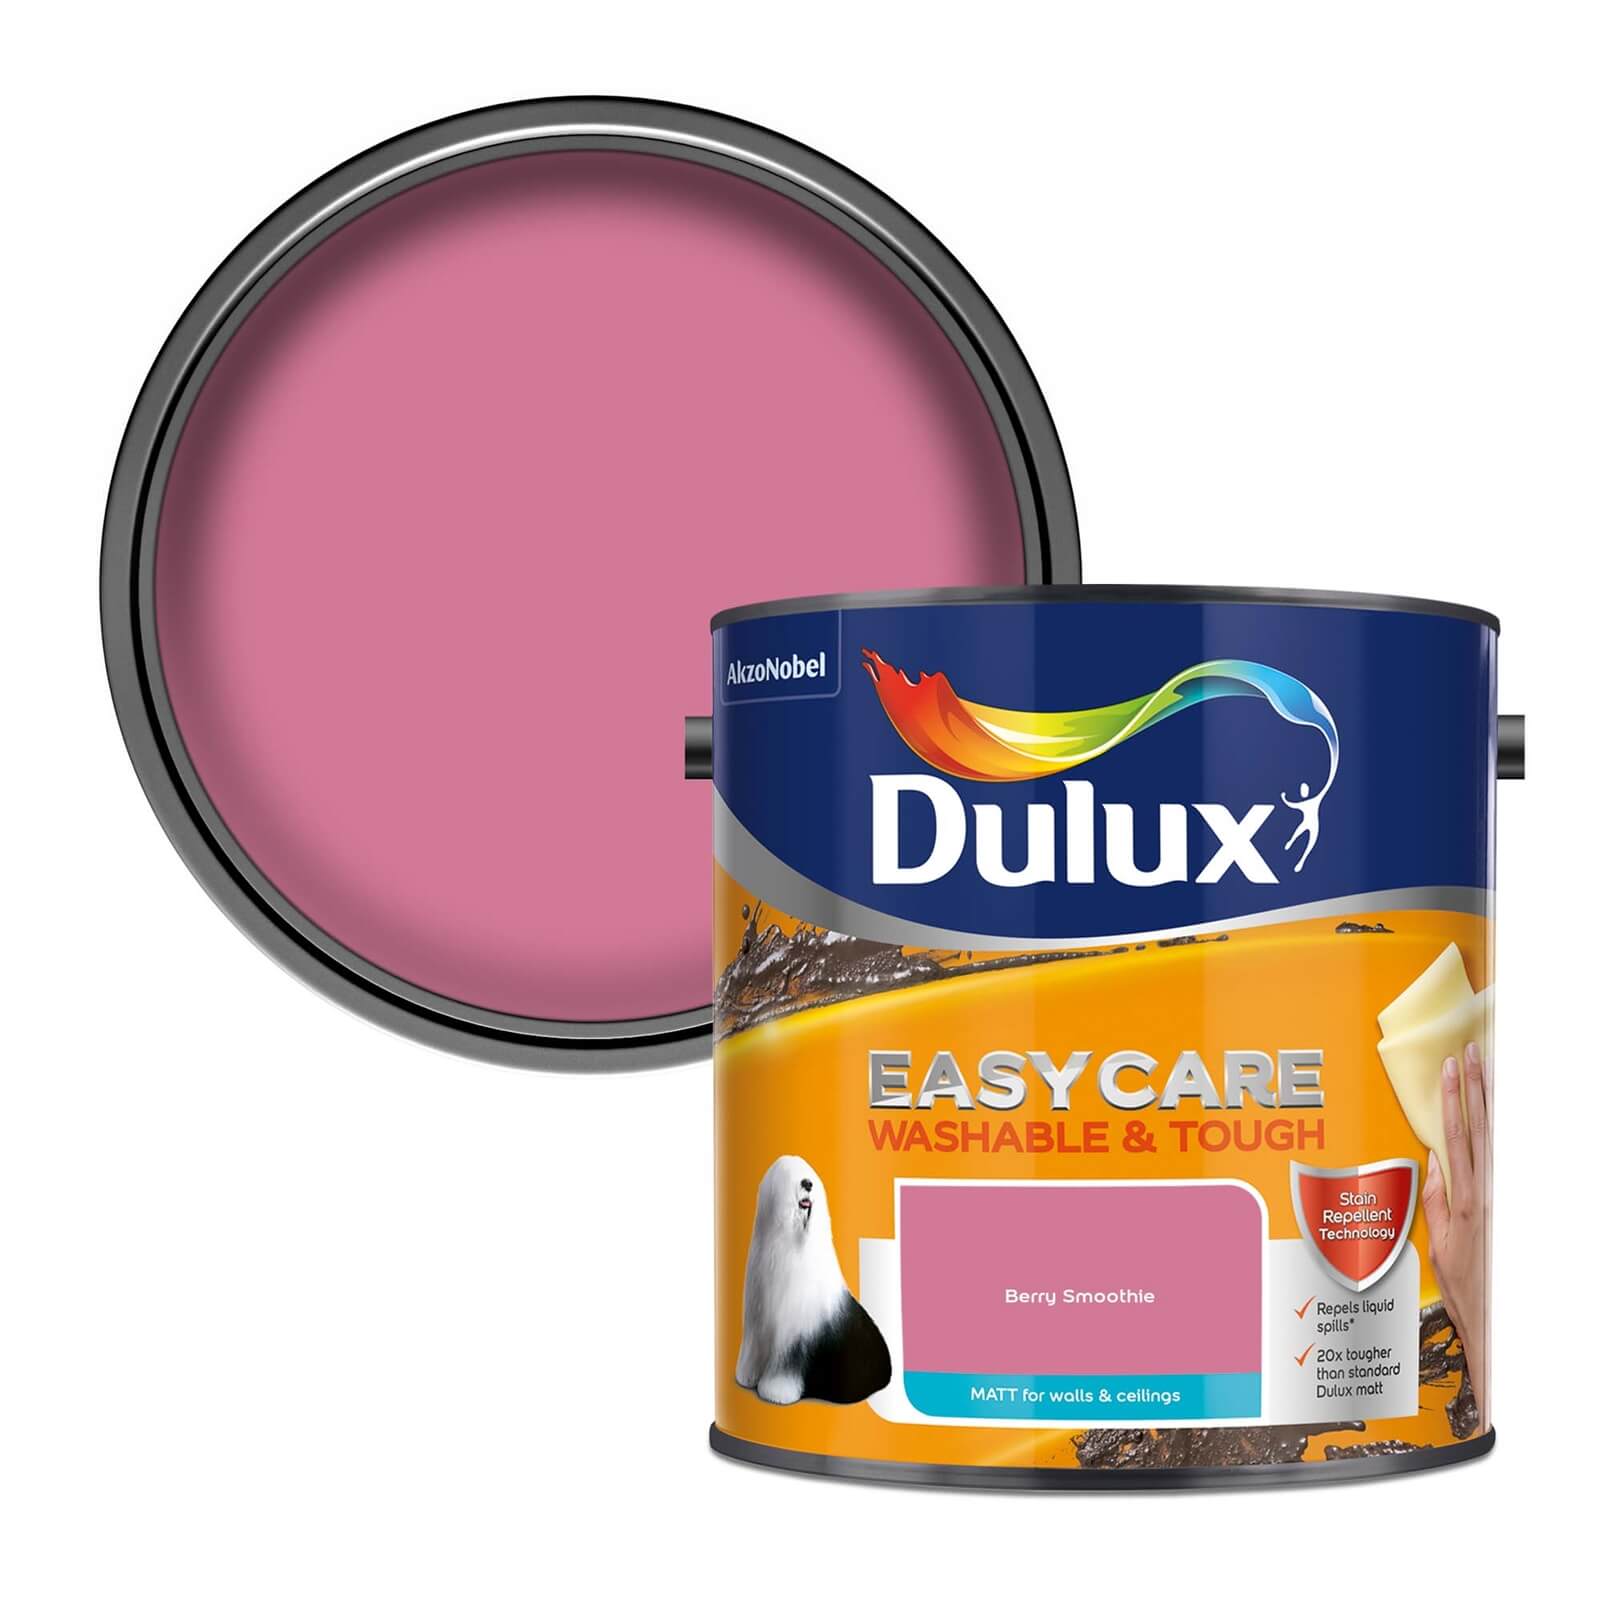 Dulux Easycare Washable & Tough Berry Smoothie Matt Paint - 2.5L